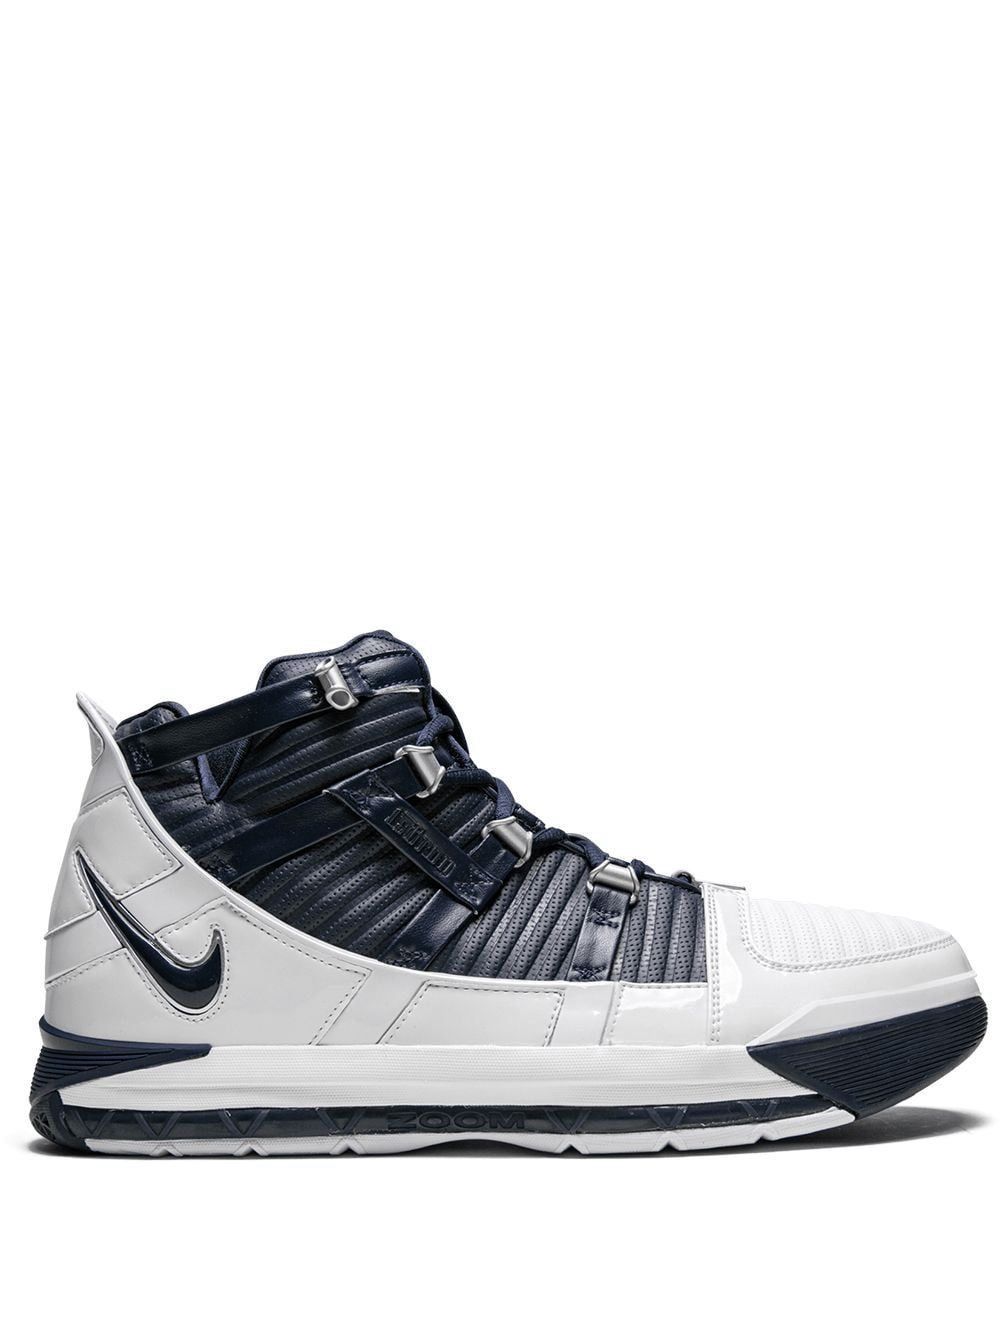 Nike Zoom LeBron 3 QS "White/Navy" sneakers von Nike